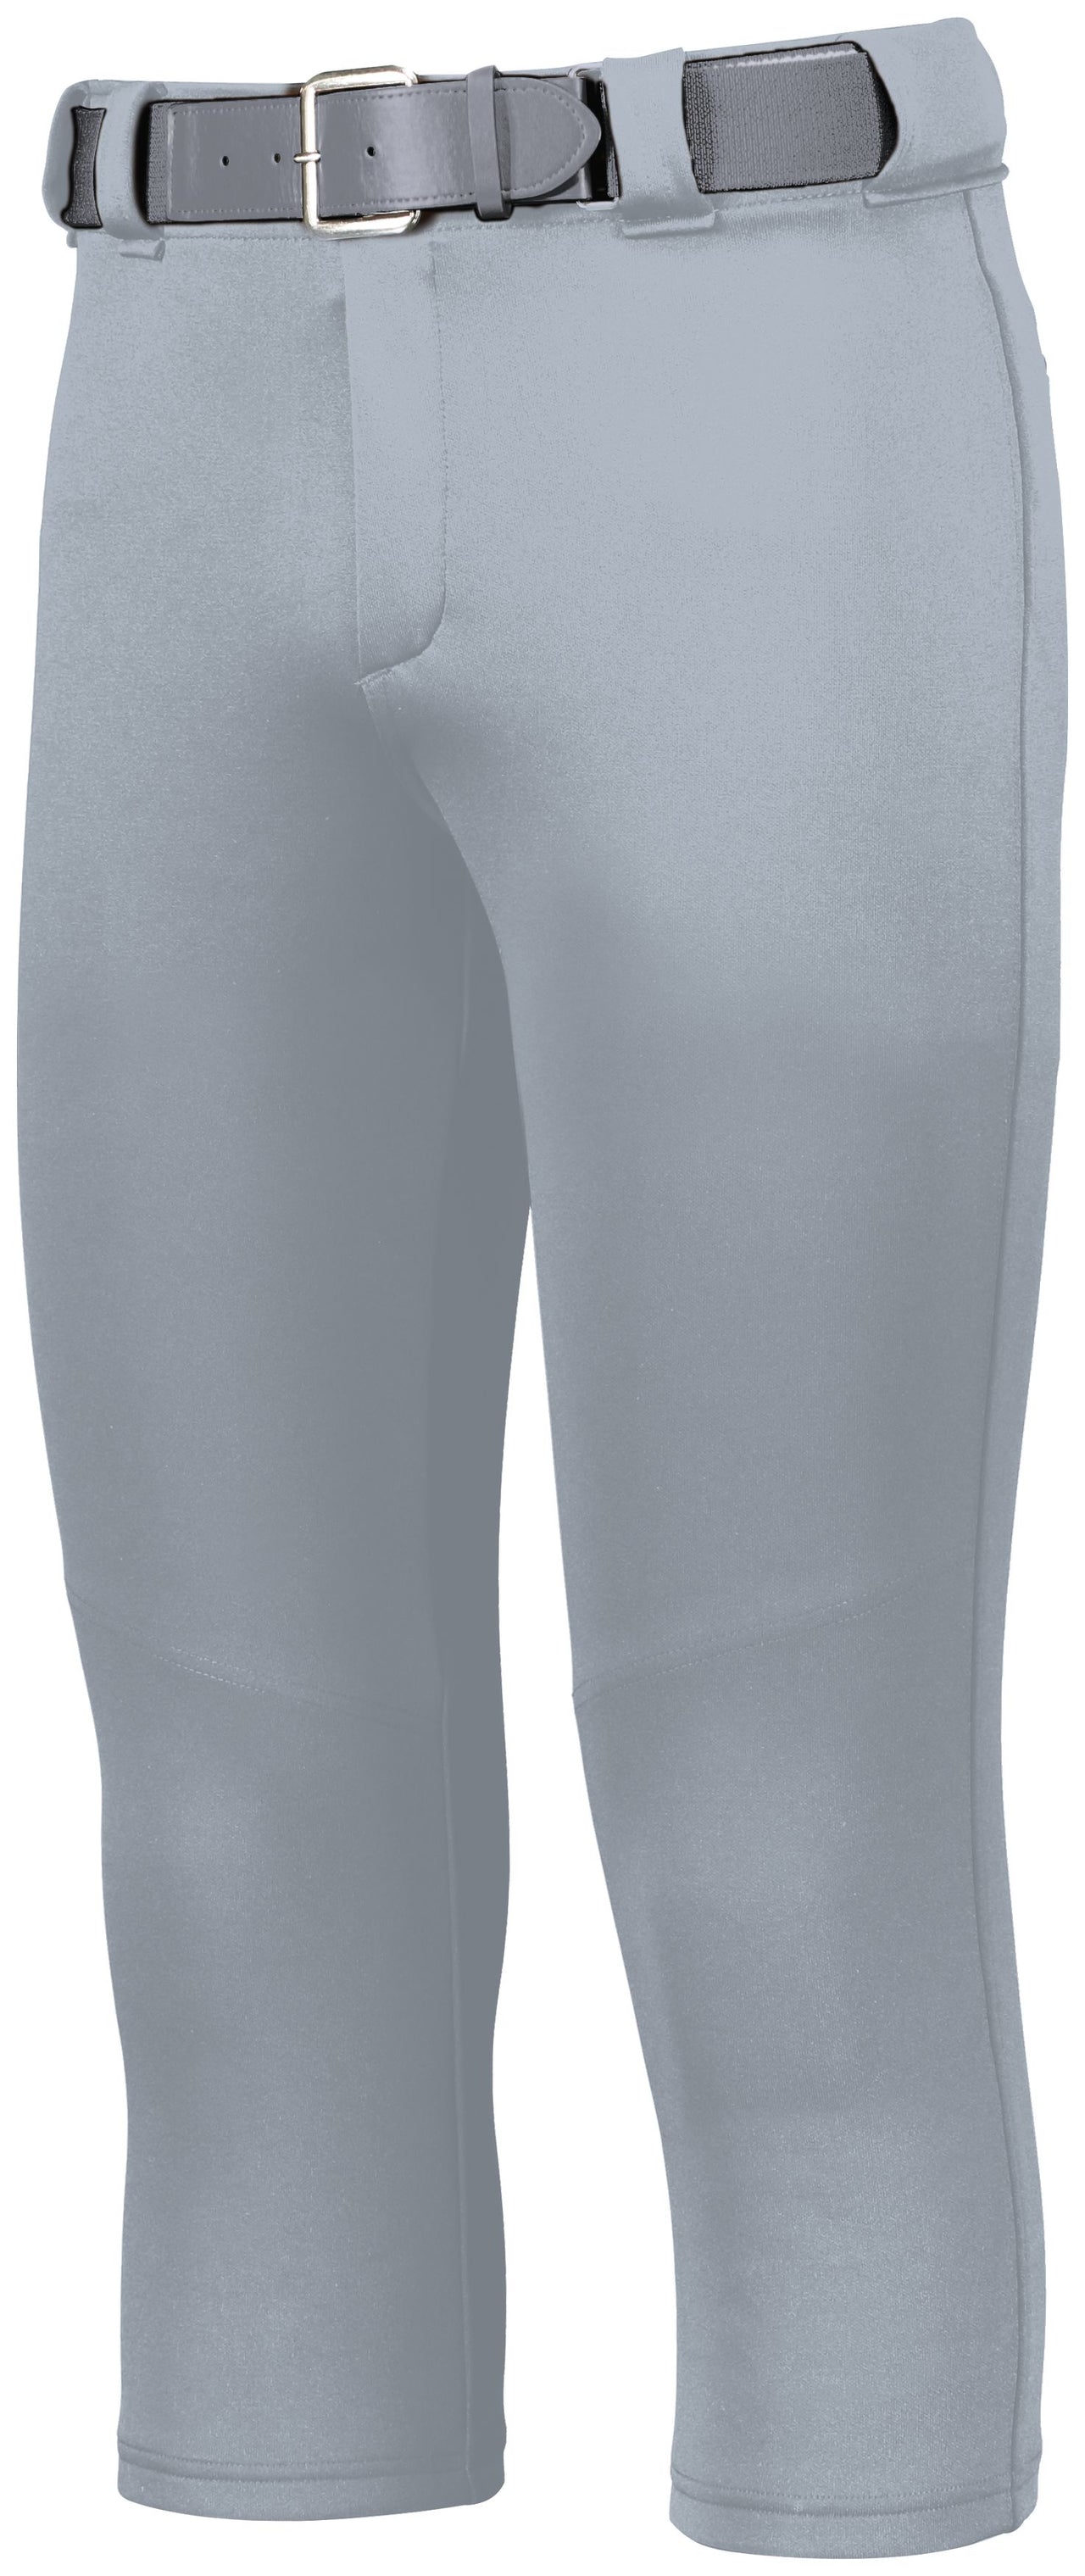 Pantalon de softball Slideflex pour femme - 1297